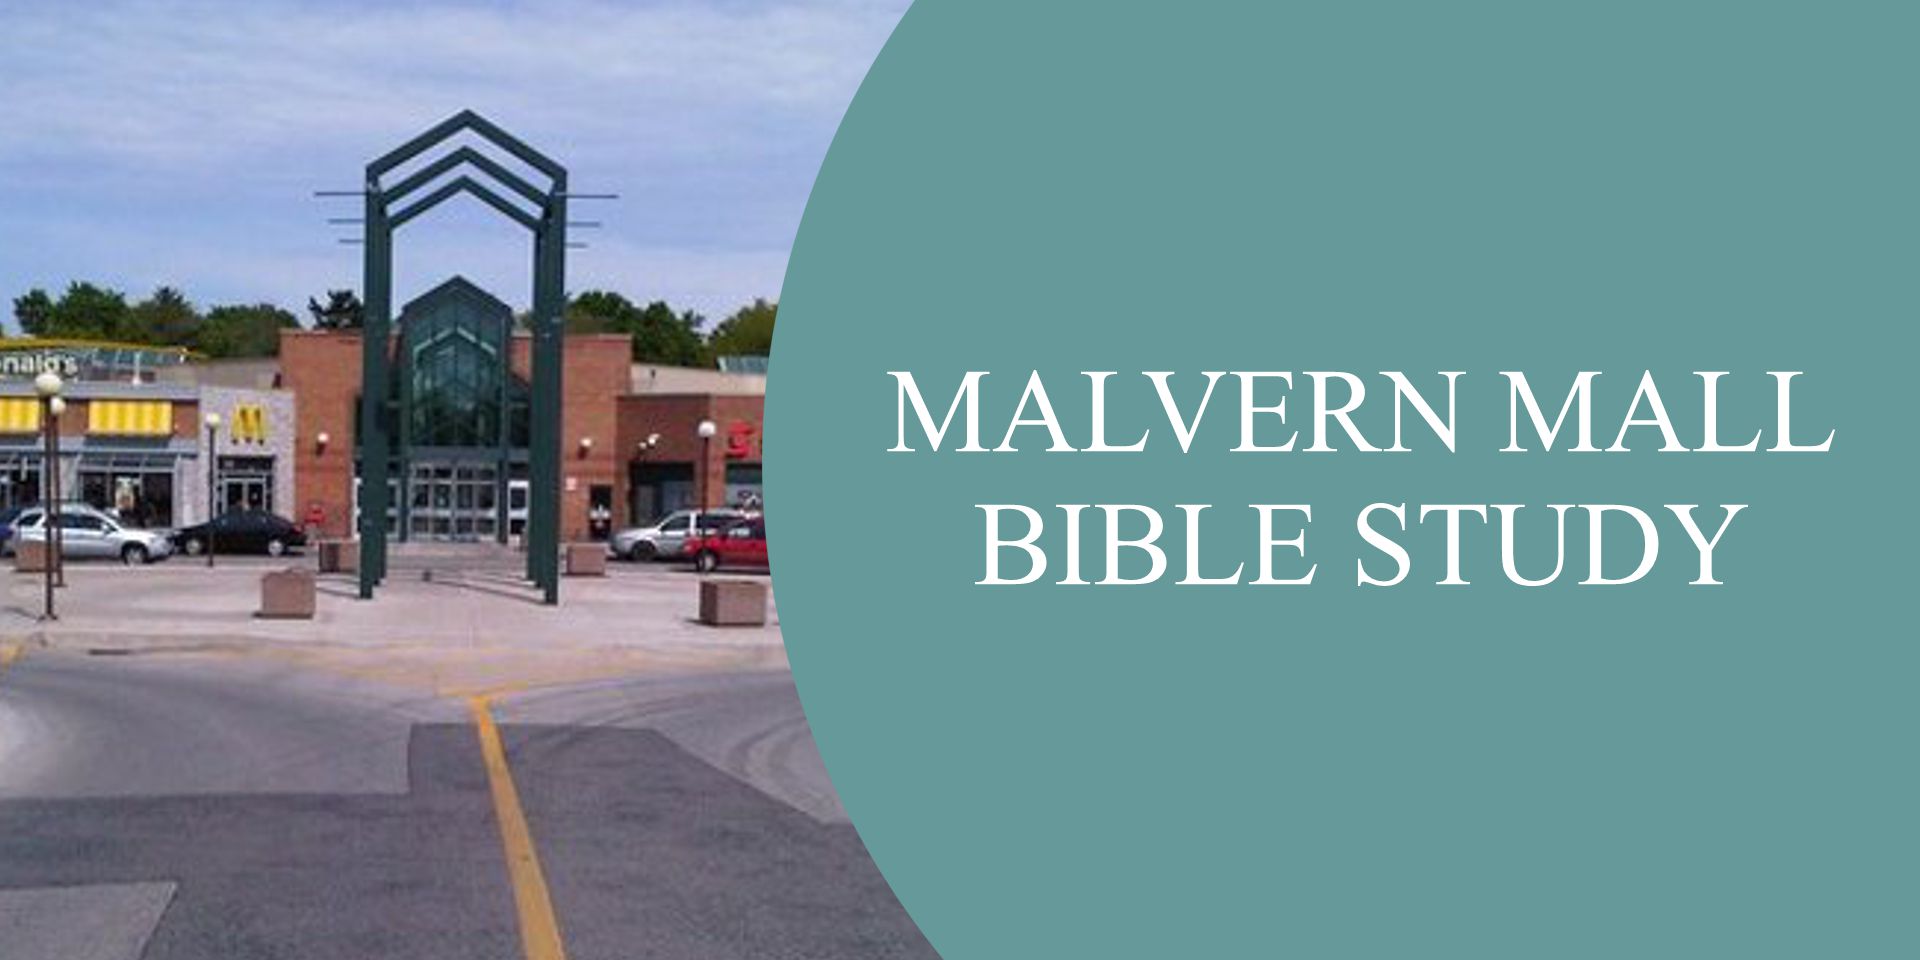 Malvern Mall Bible Study